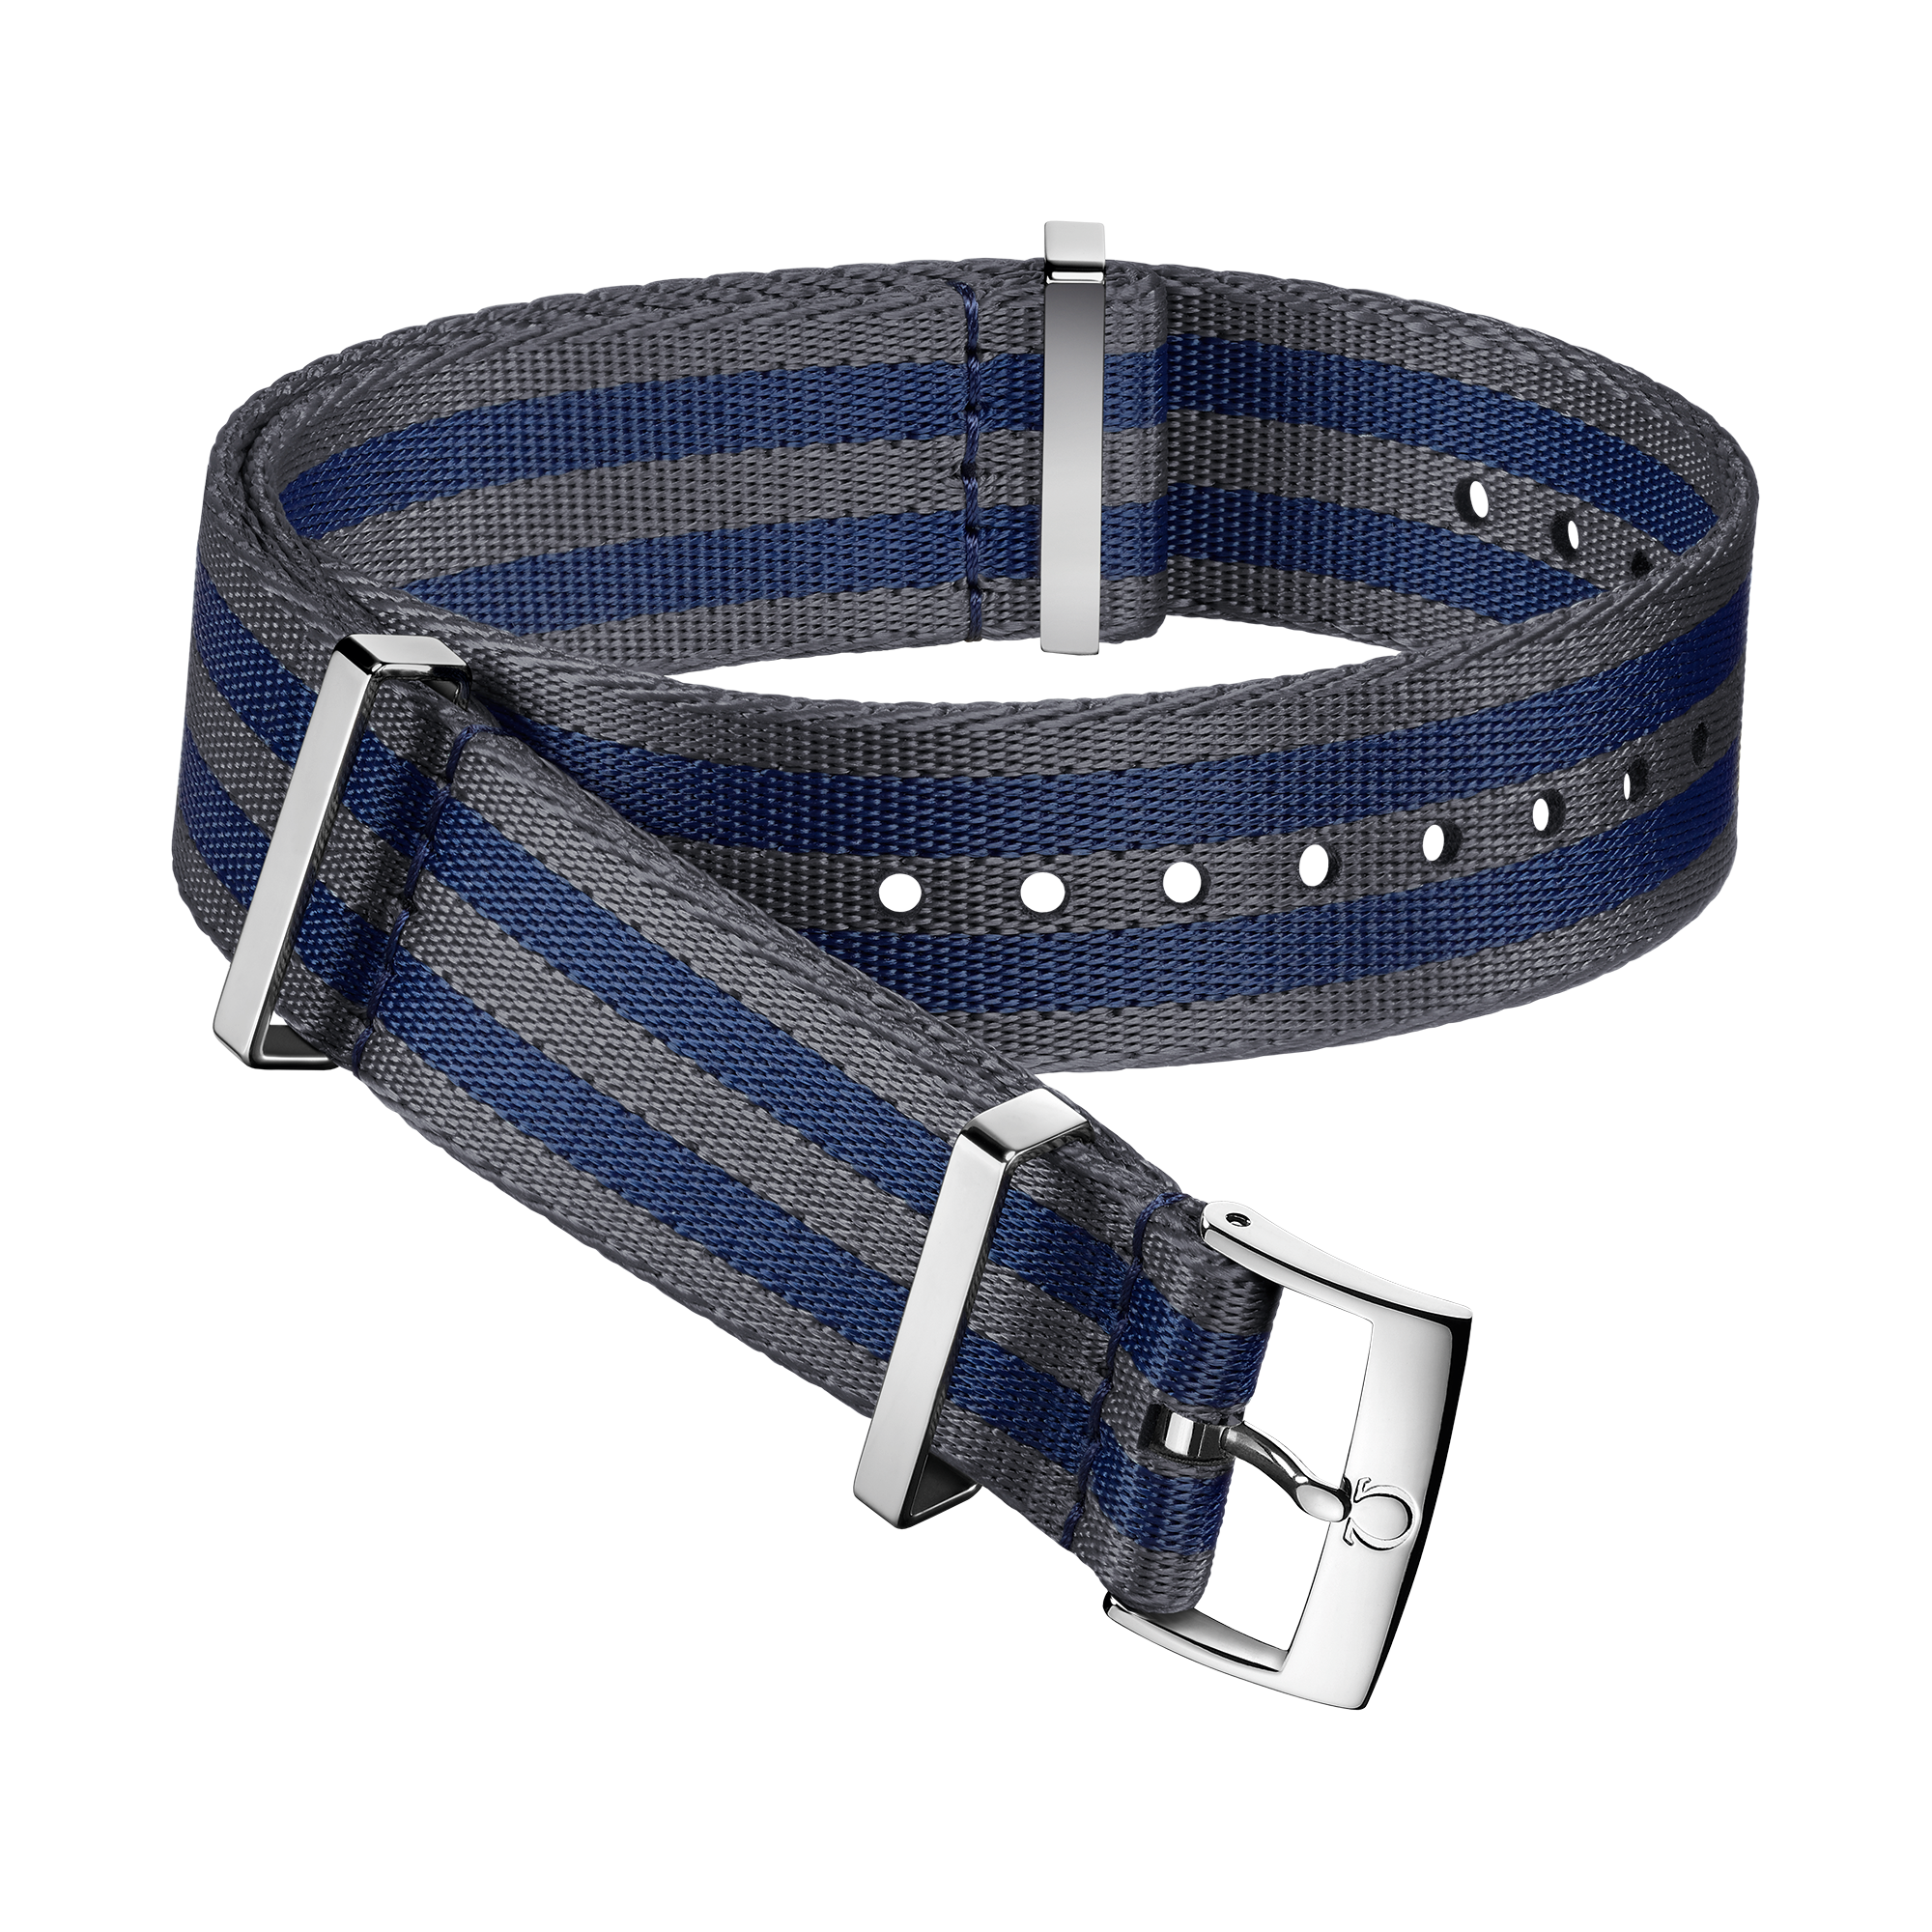 Bracelete NATO - Bracelete em poliamida cinzenta e azul com 5 faixas - 031CWZ007884